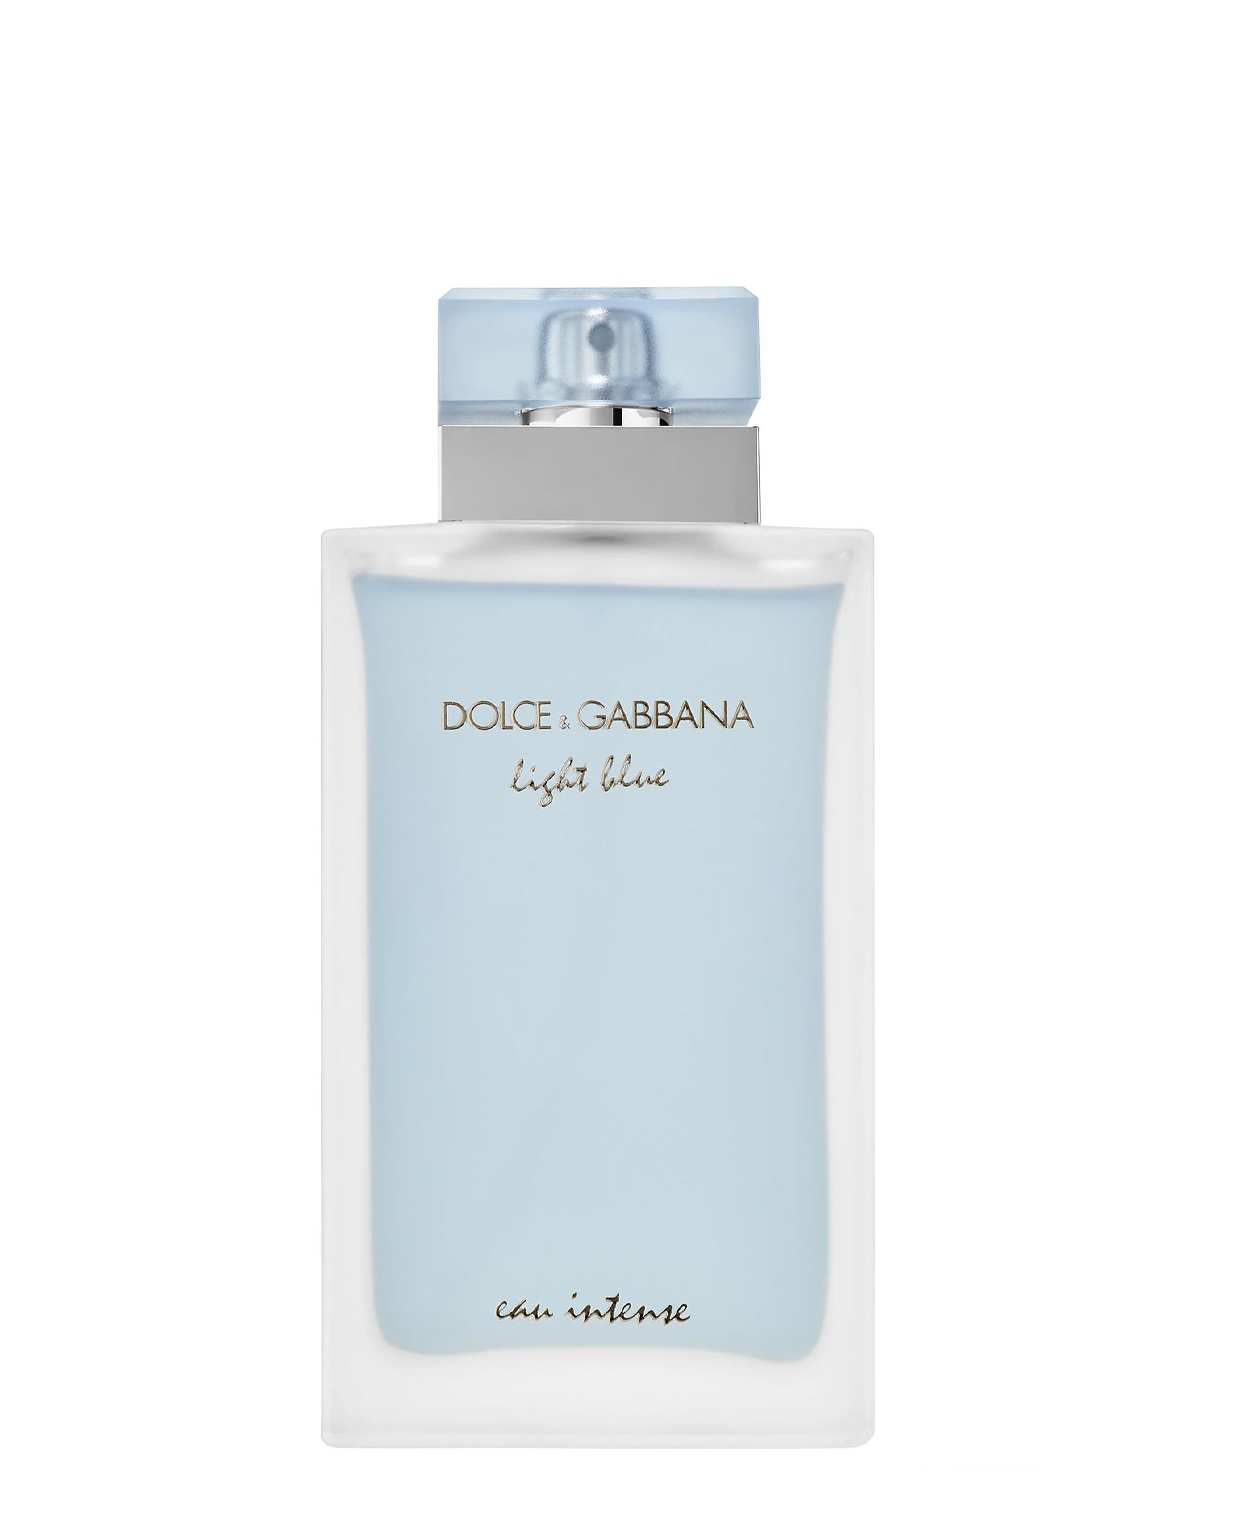 DOLCE & GABBANA Light Blue Eau Intense Her&Him Perfume